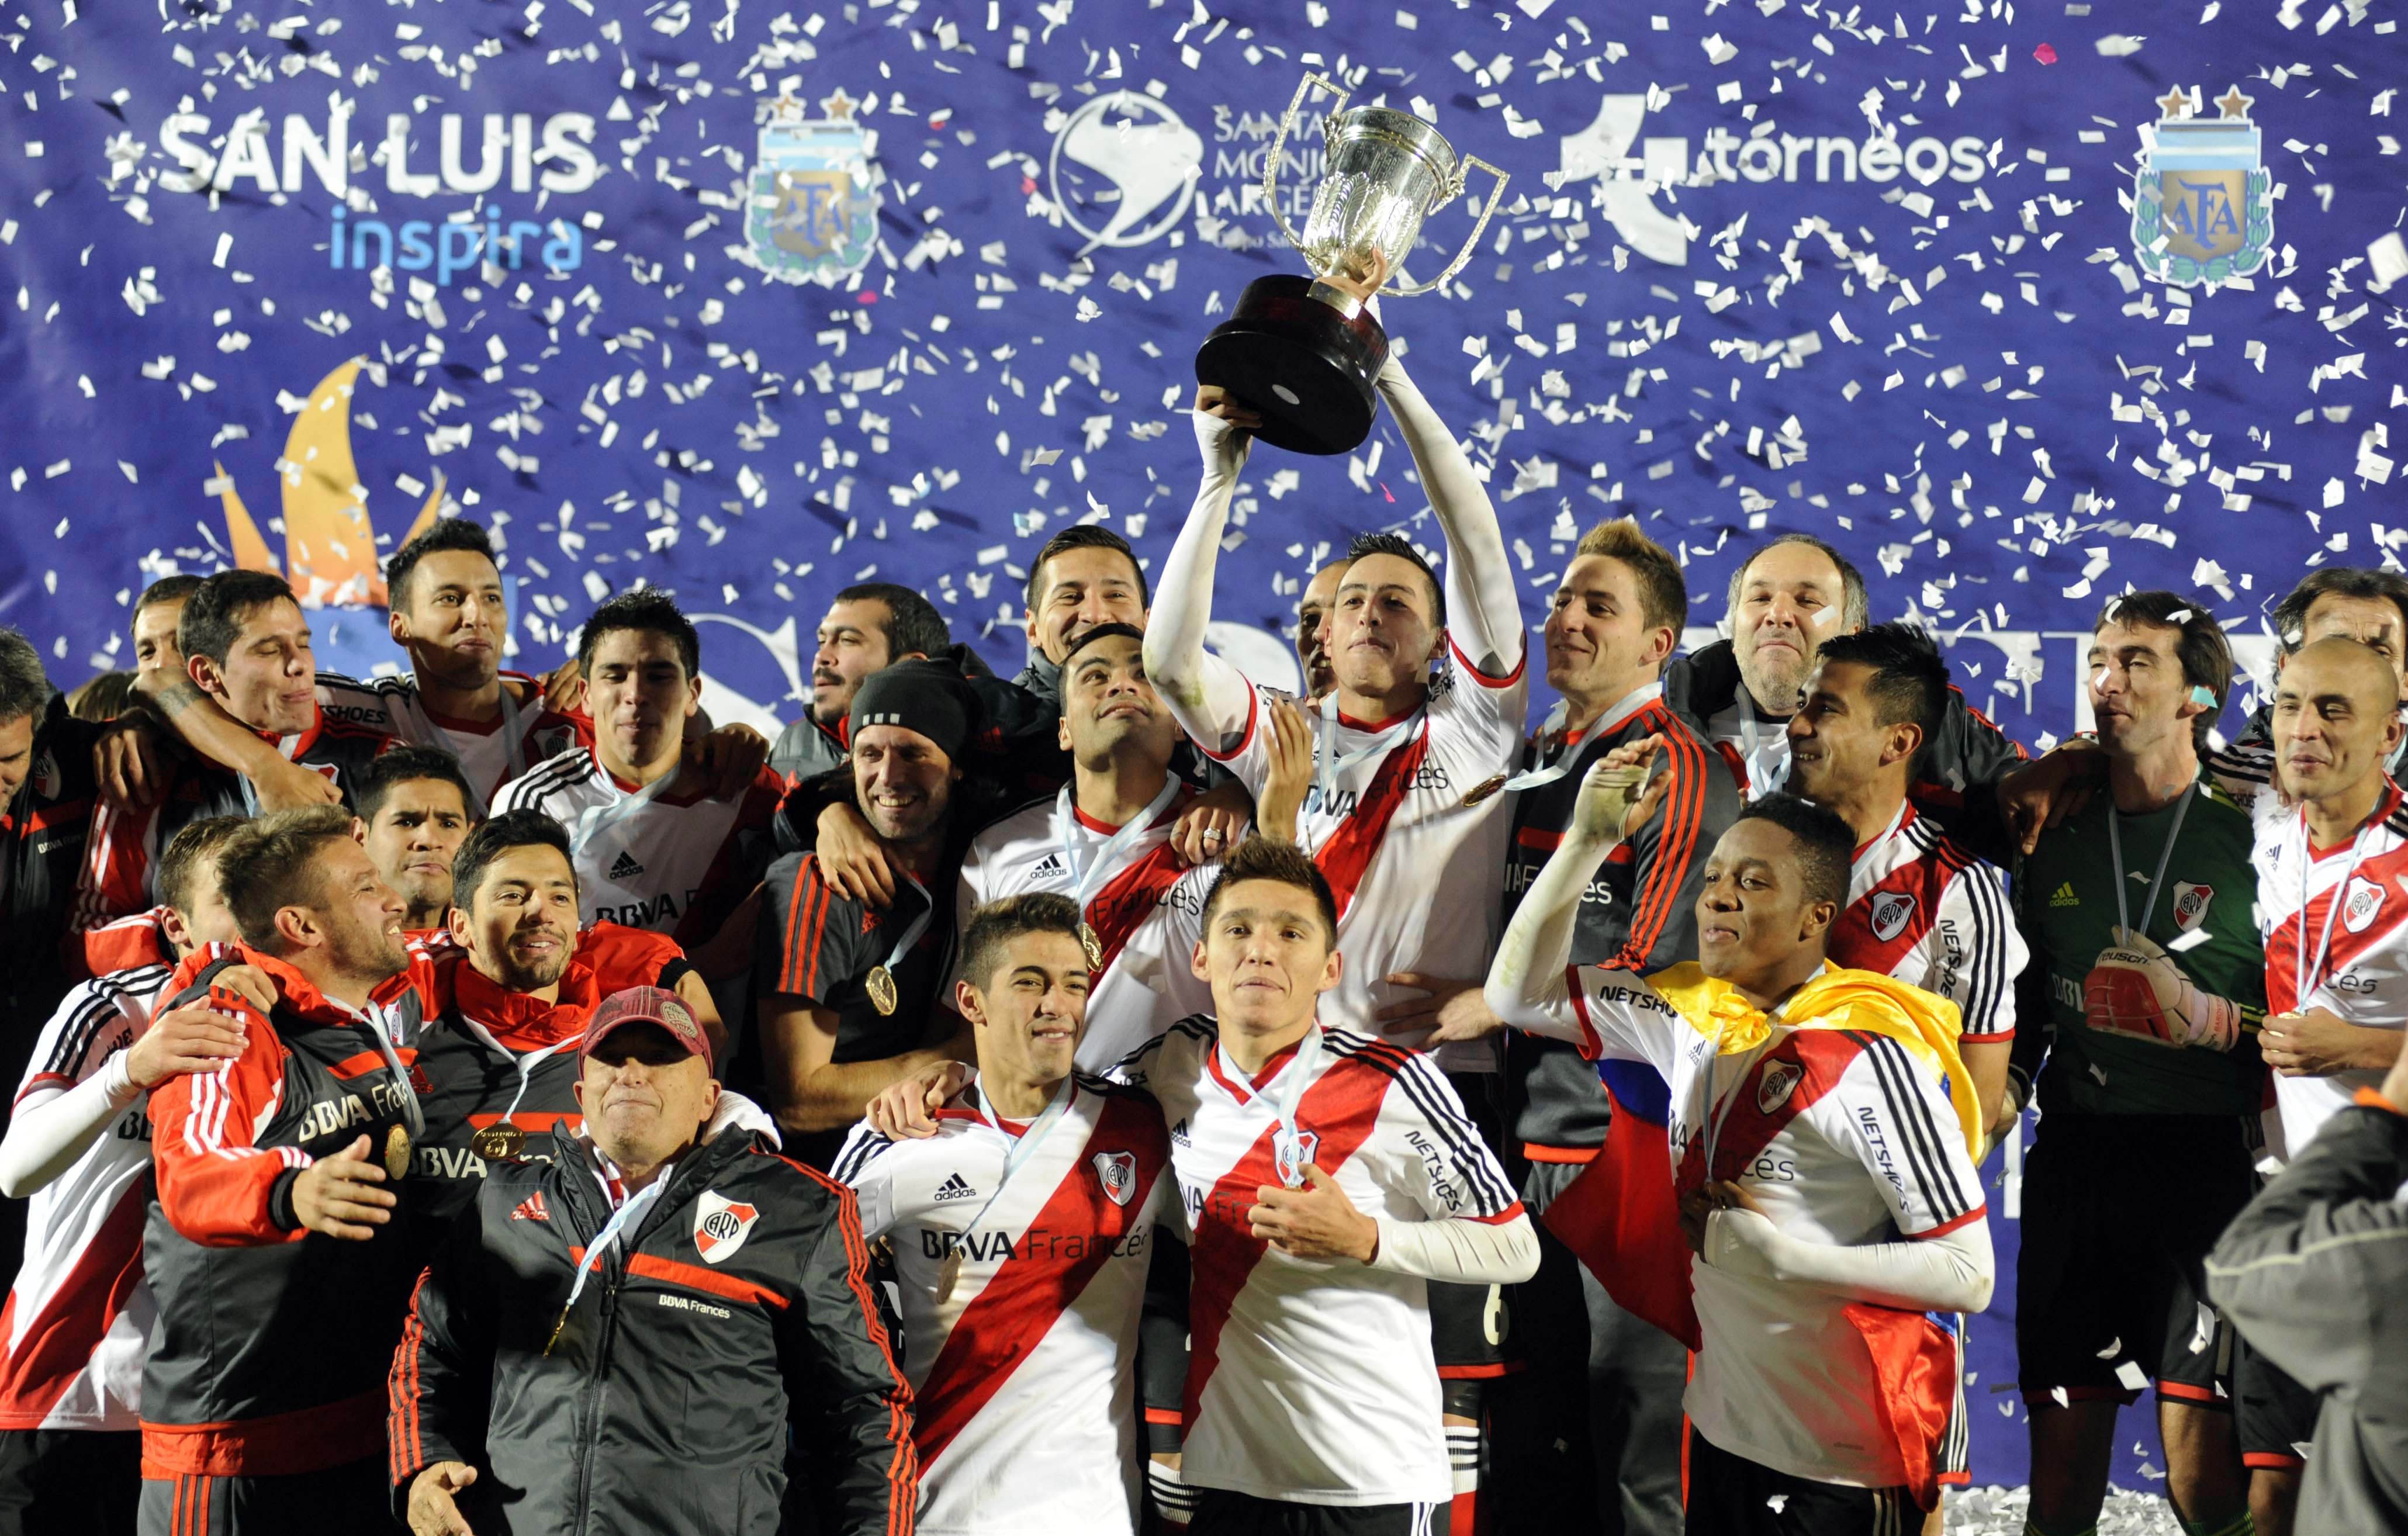 La AFA confirmó la fecha de disputa de la Supercopa Argentina Supercopa